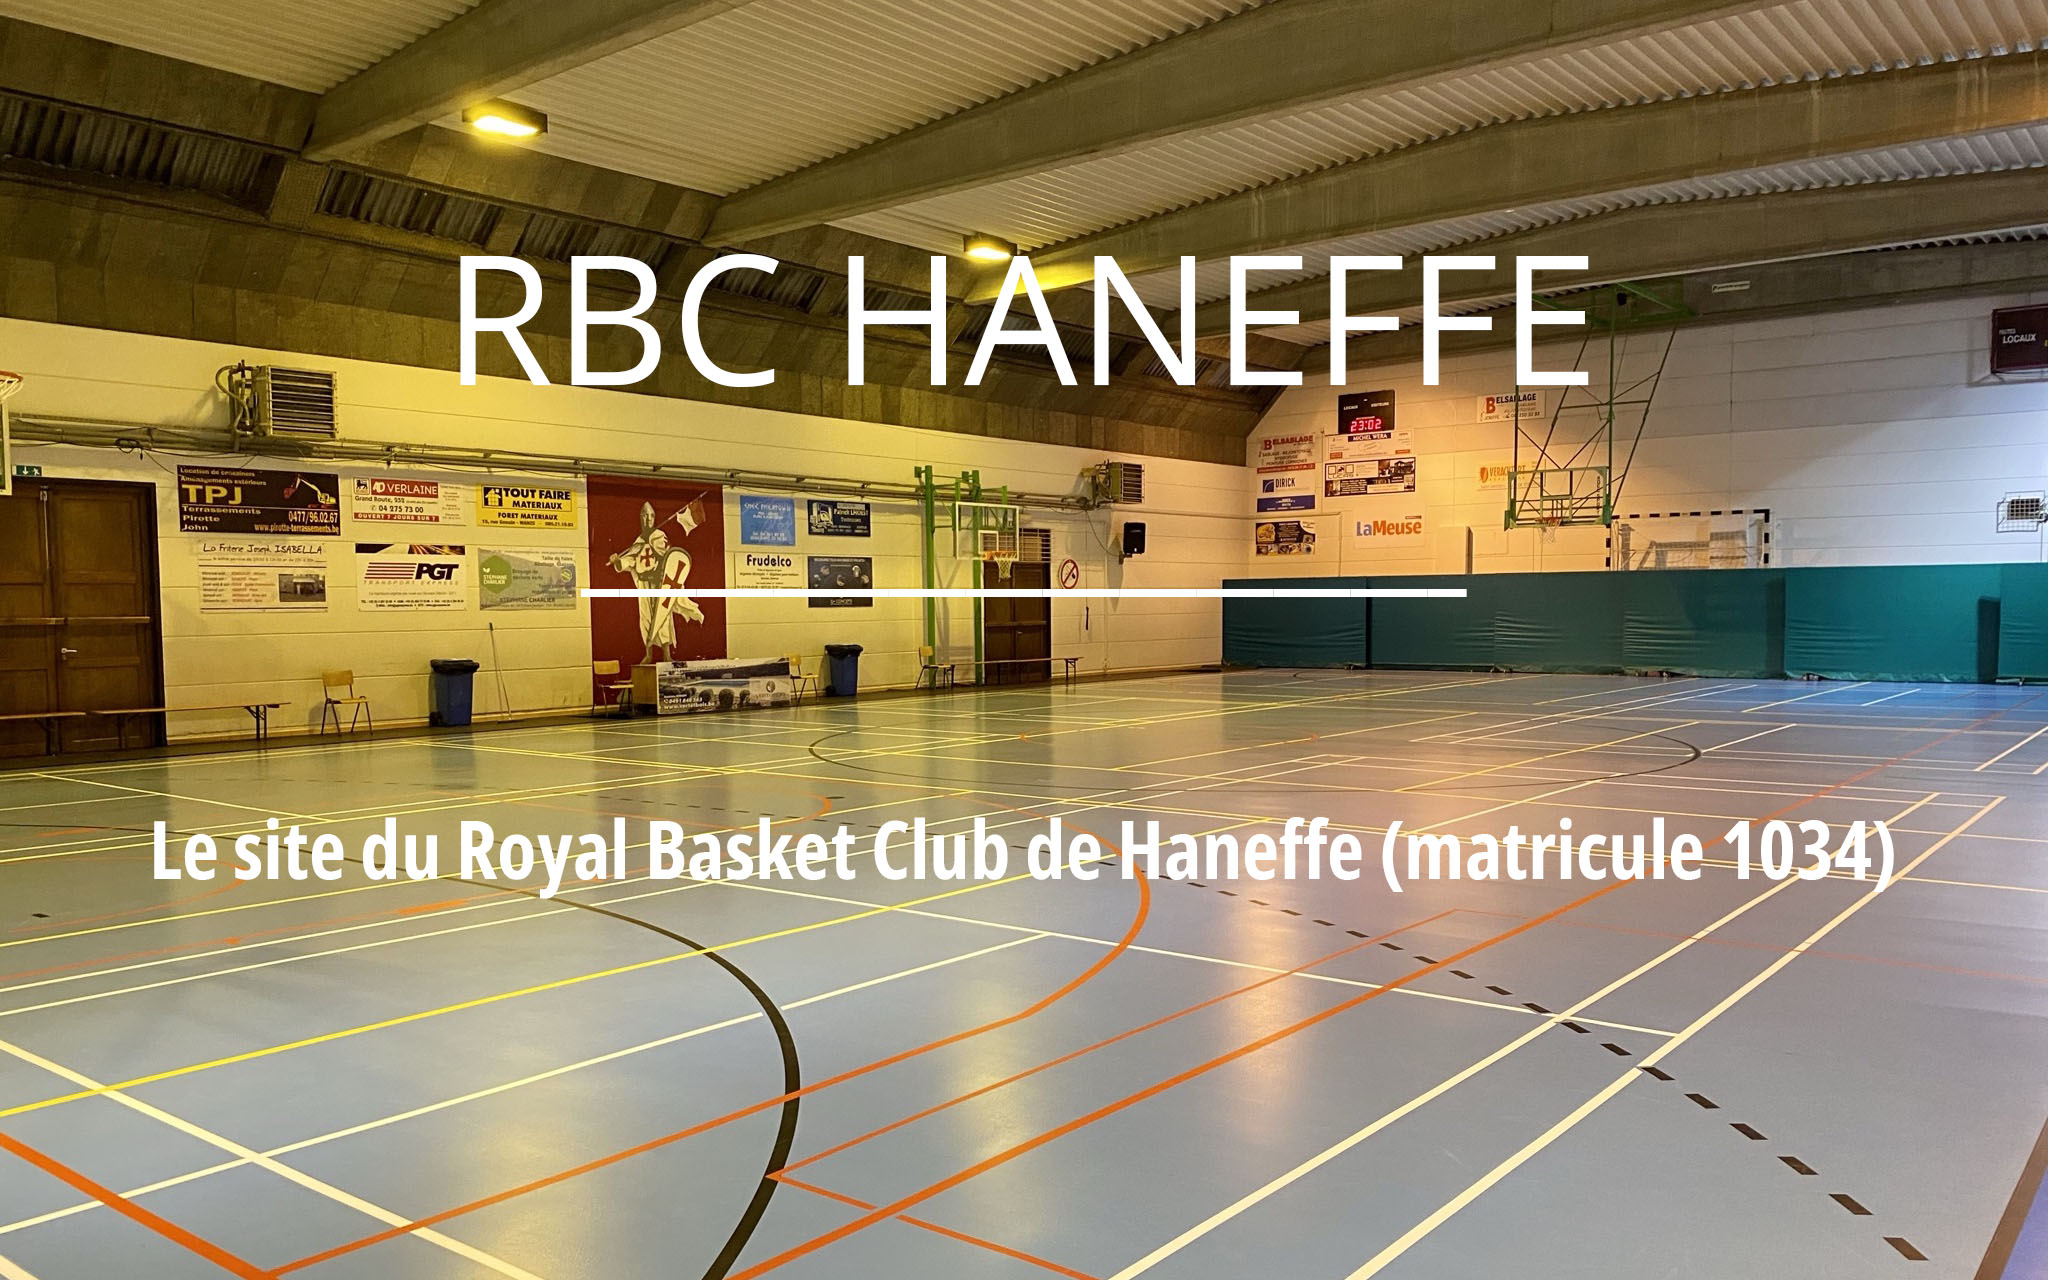 www.haneffebasket.be